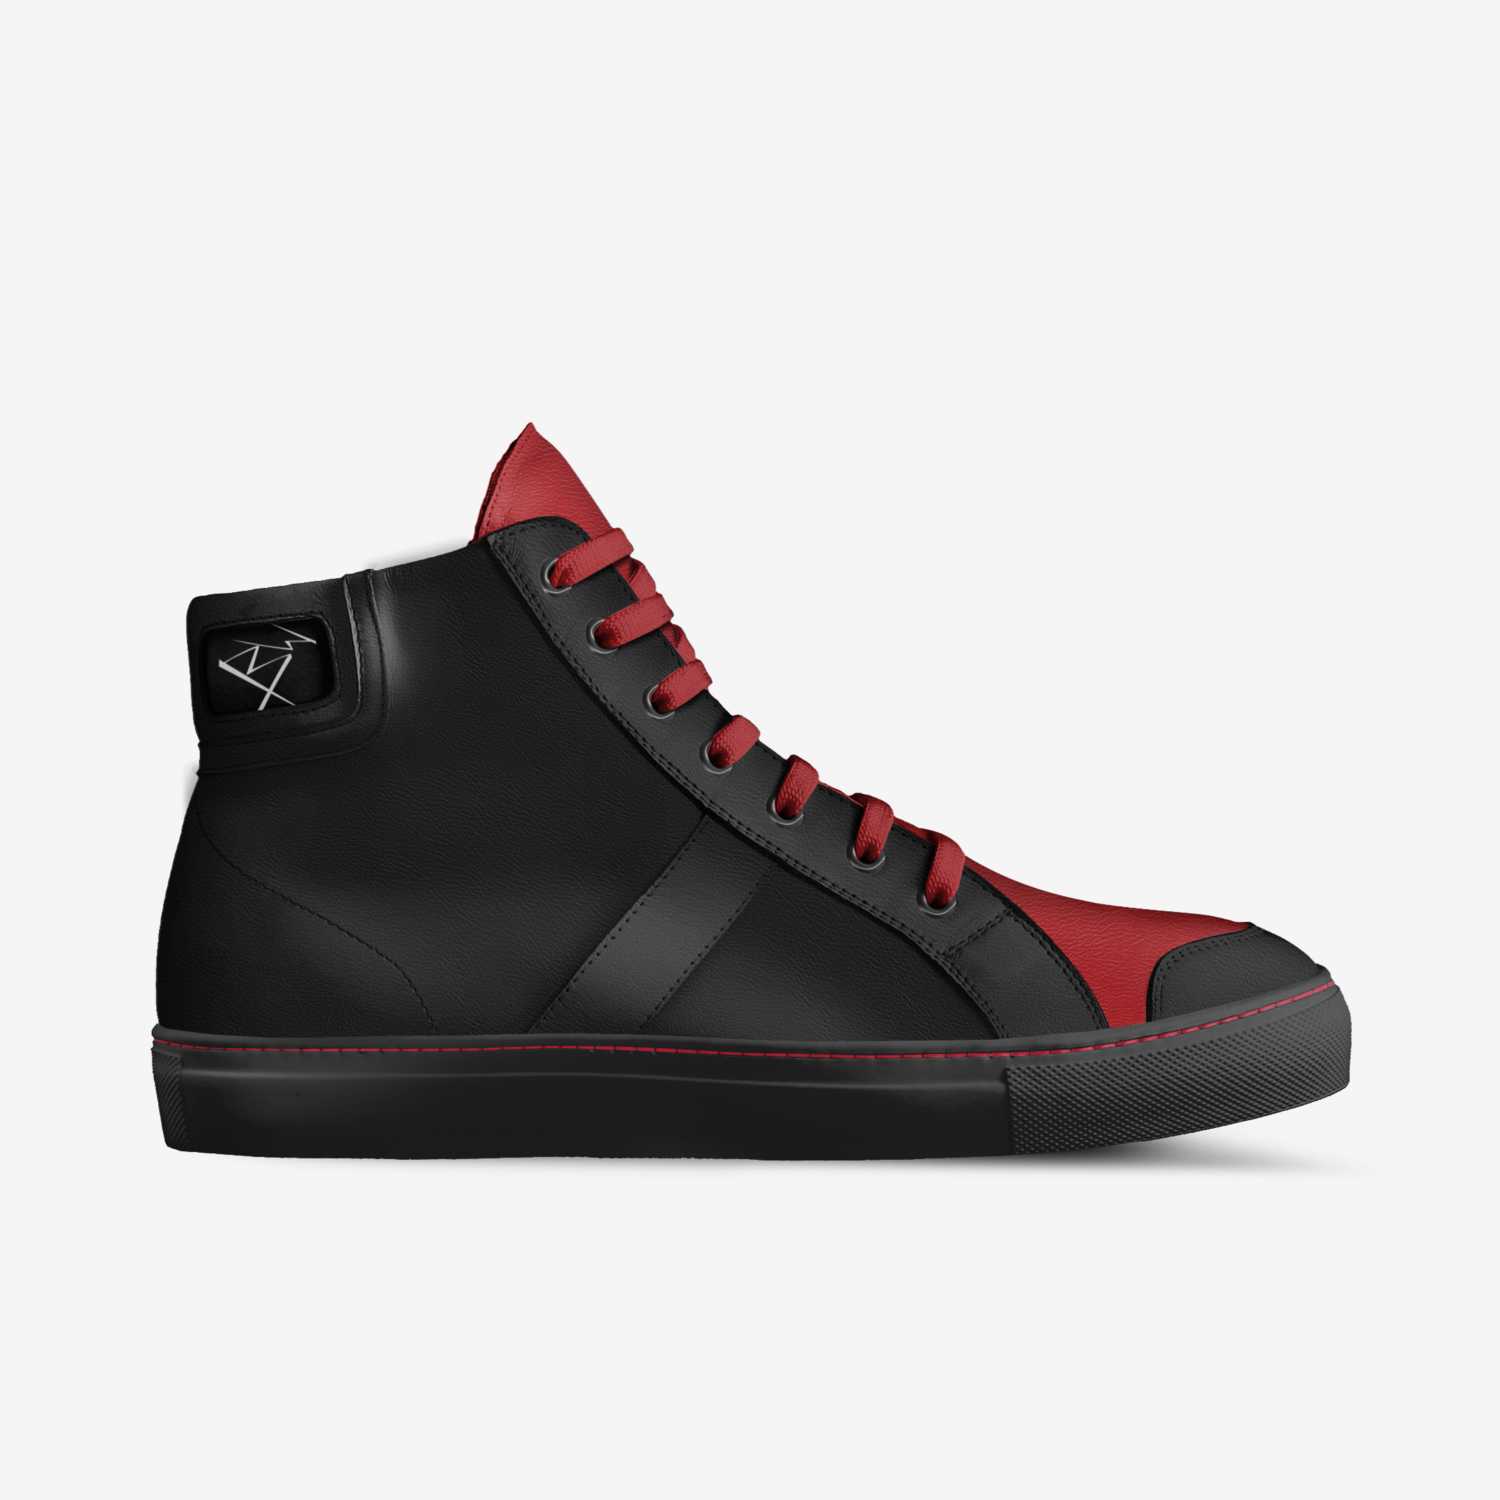 BLACK WIDOW | A Custom Shoe concept by Billy Jon Bingham